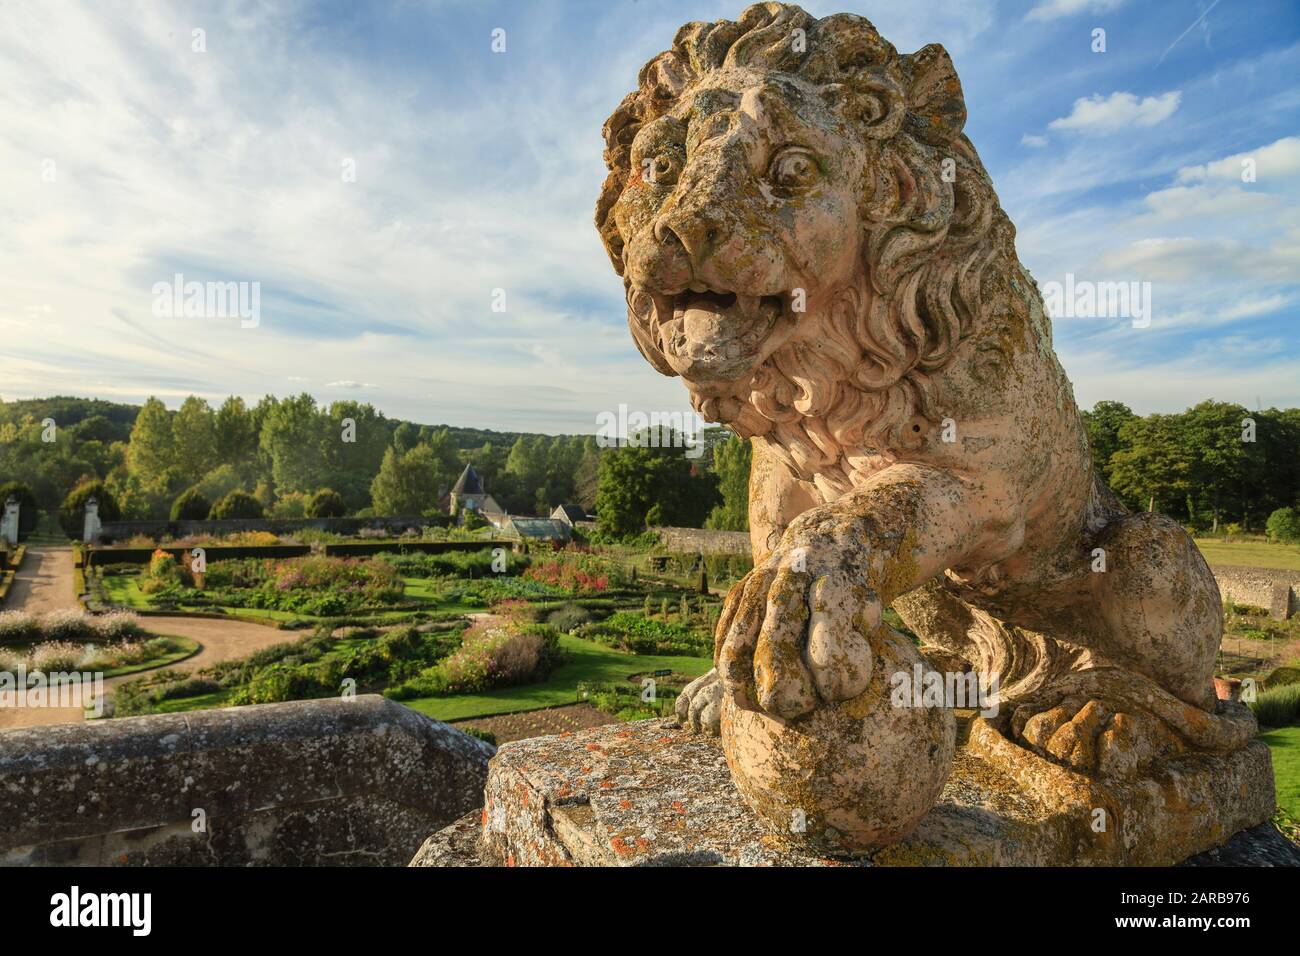 Francia, Indre et Loire, Chancay, Chateau de Valmer giardini, scultura leone in cima a una scala (menzione obbligatoria Chateau de Valmer) // Francia, Foto Stock